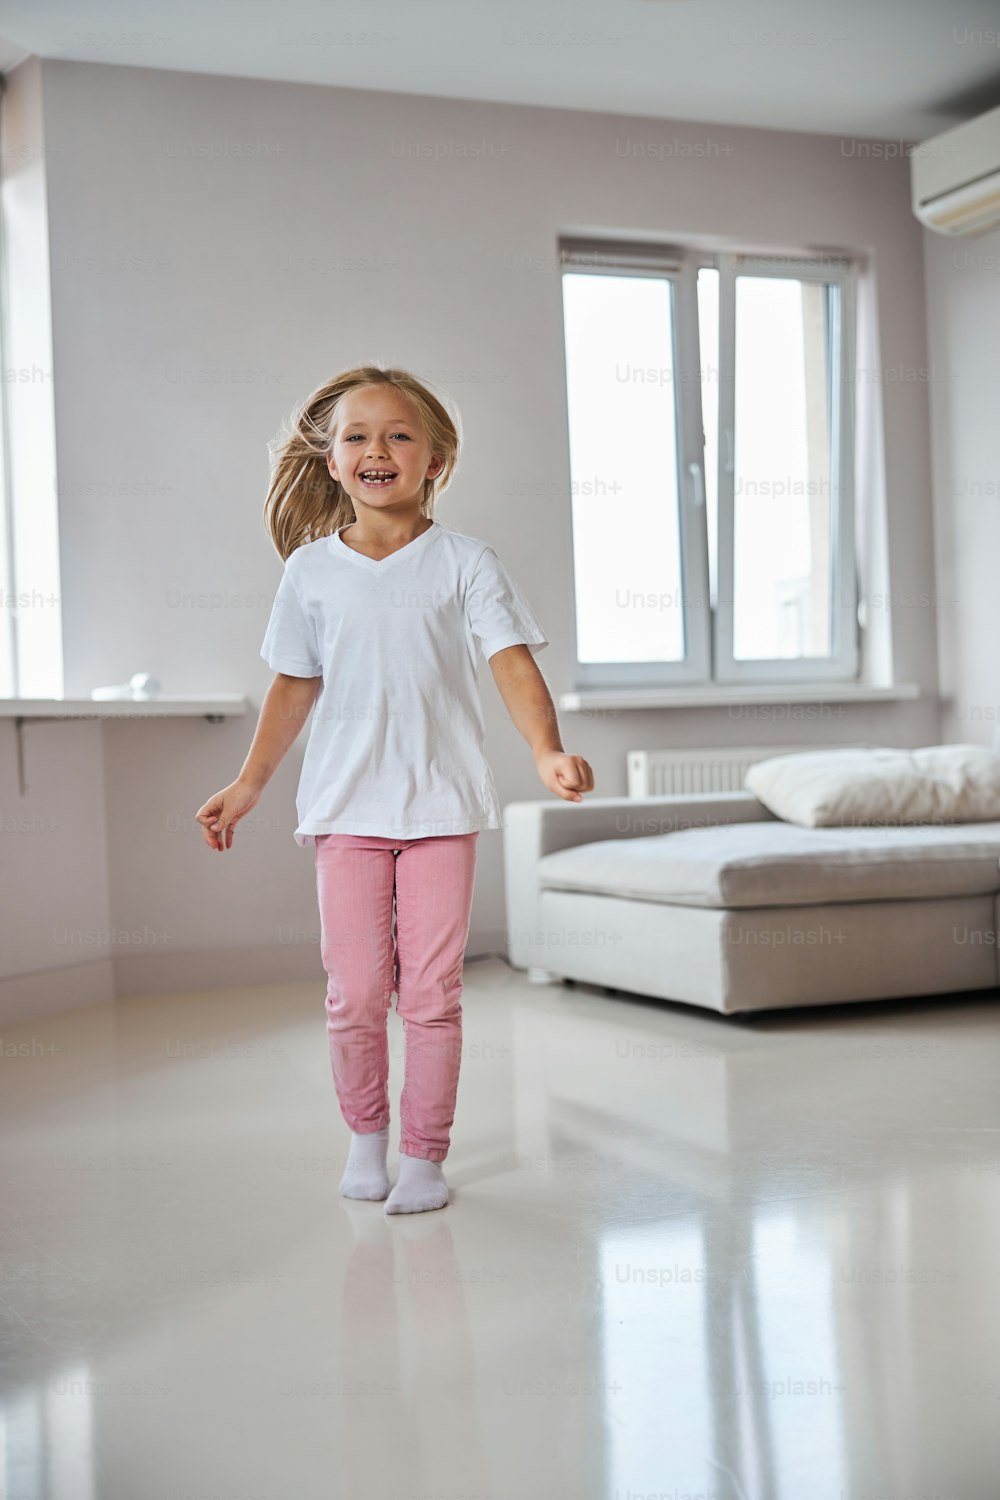 Retrato de cuerpo entero de una niña pequeña sonriente feliz que se divierte en la habitación interior mientras está de pie frente al sofá gris